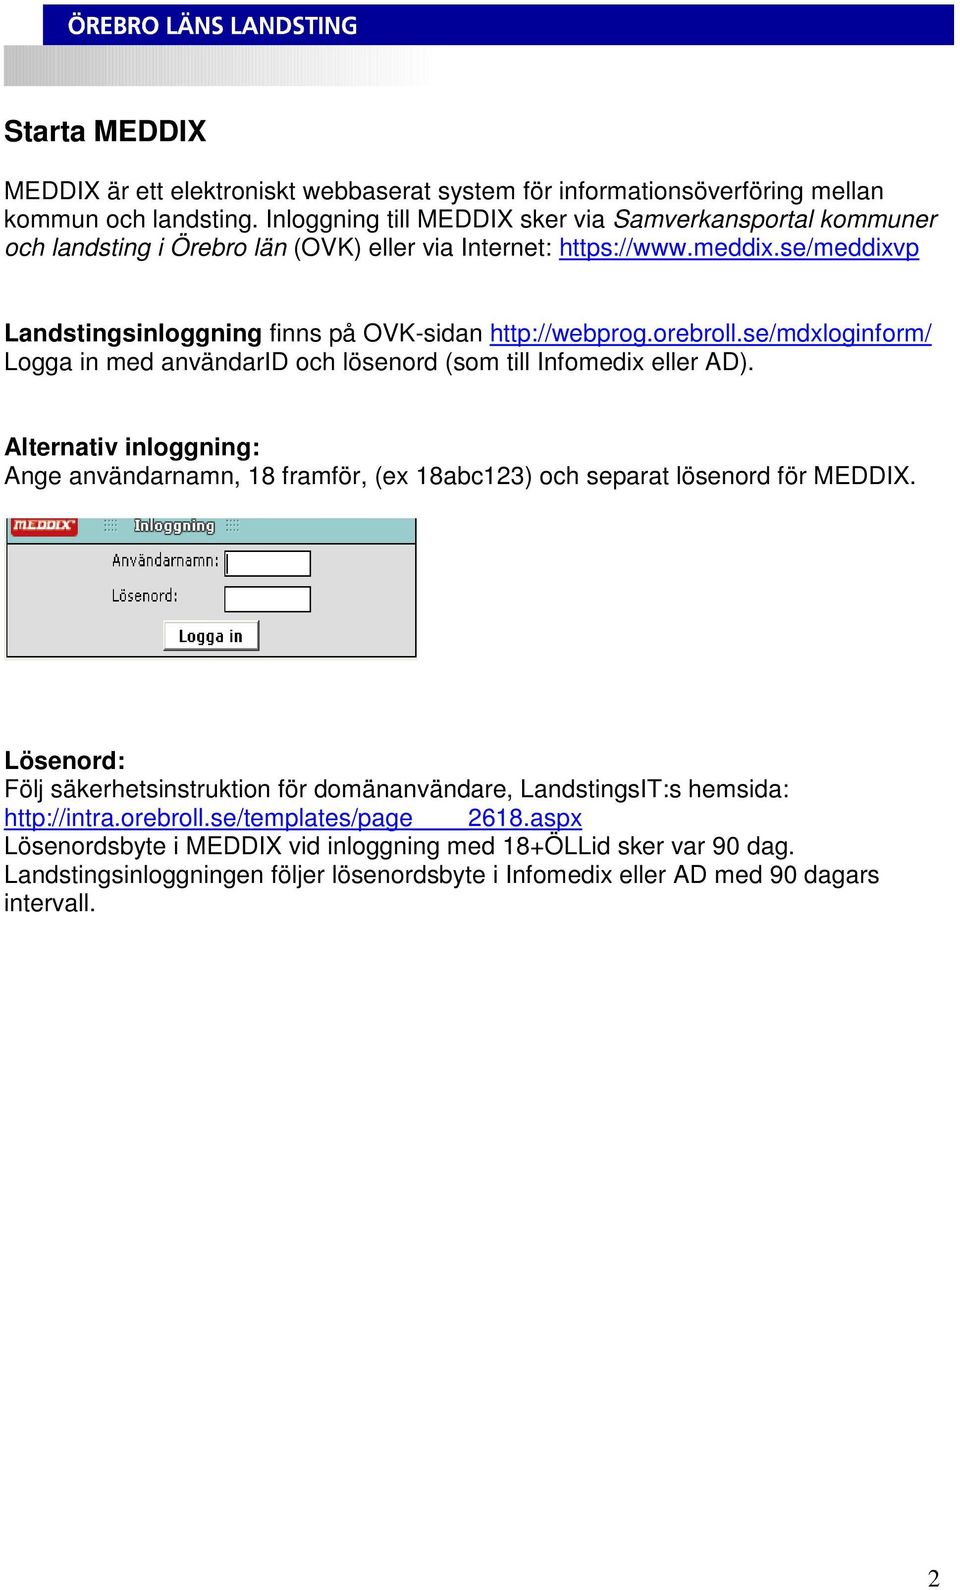 orebroll.se/mdxloginform/ Logga in med användarid och lösenord (som till Infomedix eller AD). Alternativ inloggning: Ange användarnamn, 18 framför, (ex 18abc123) och separat lösenord för MEDDIX.